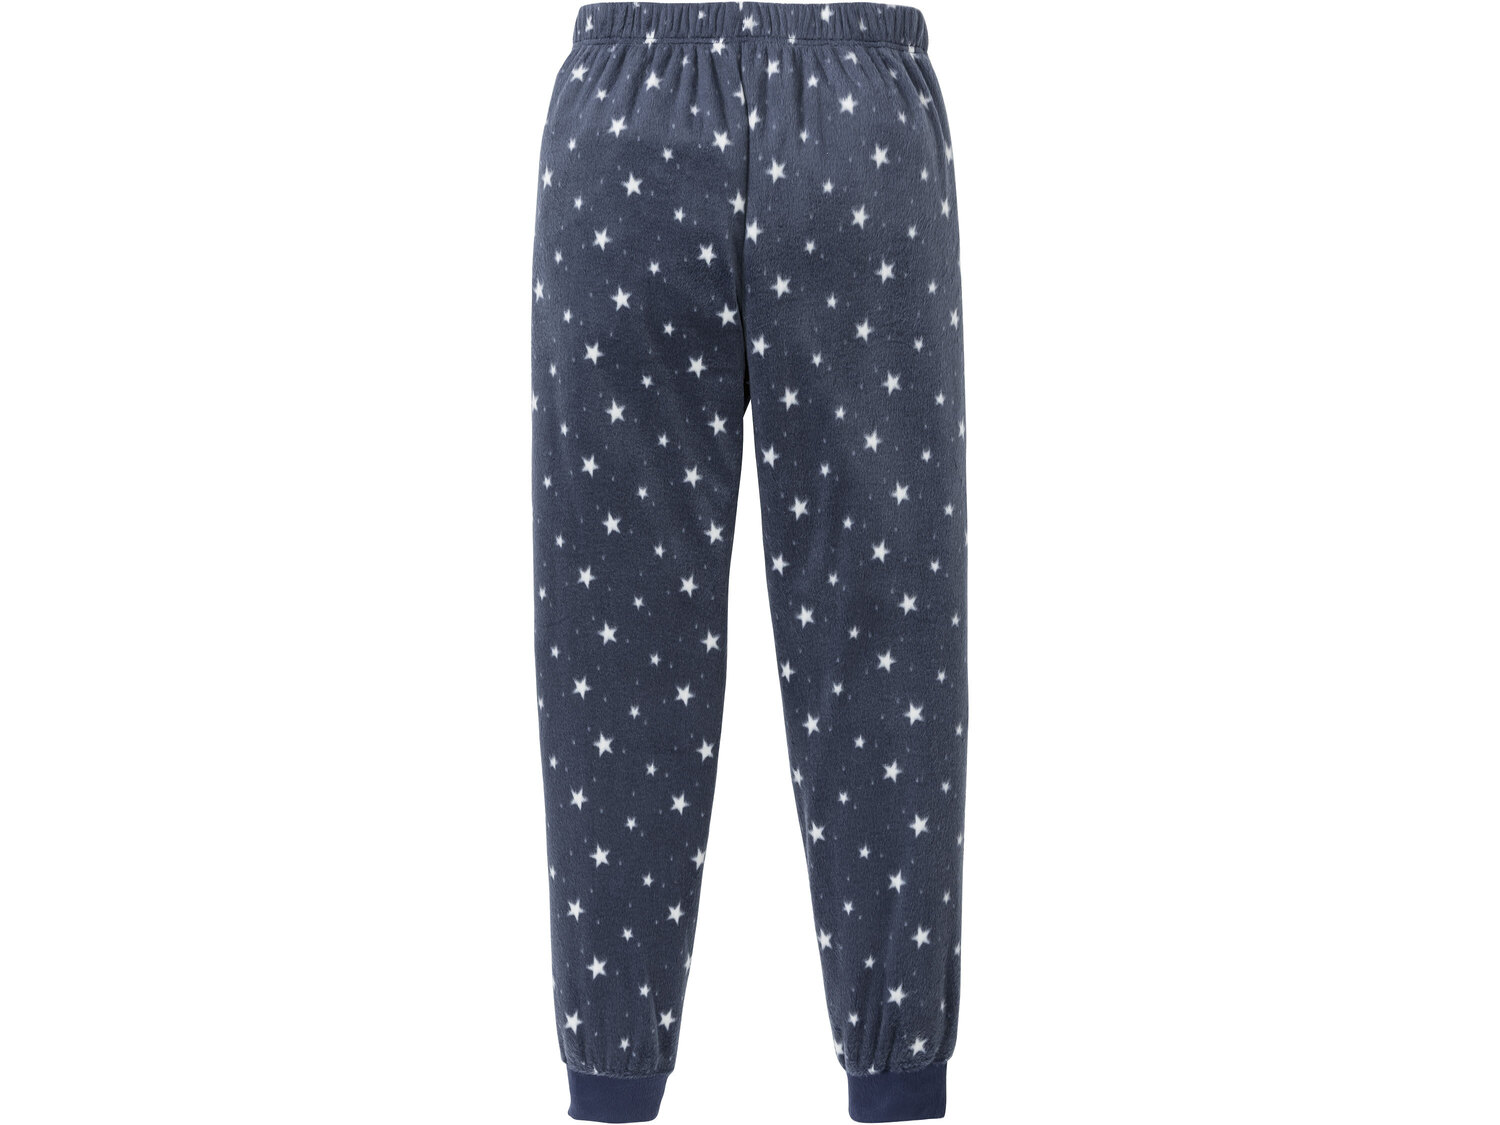 Piżama , cena 34,99 PLN 
- koszulka 100% bawełny
- spodnie z polaru
- rozmiary: ...